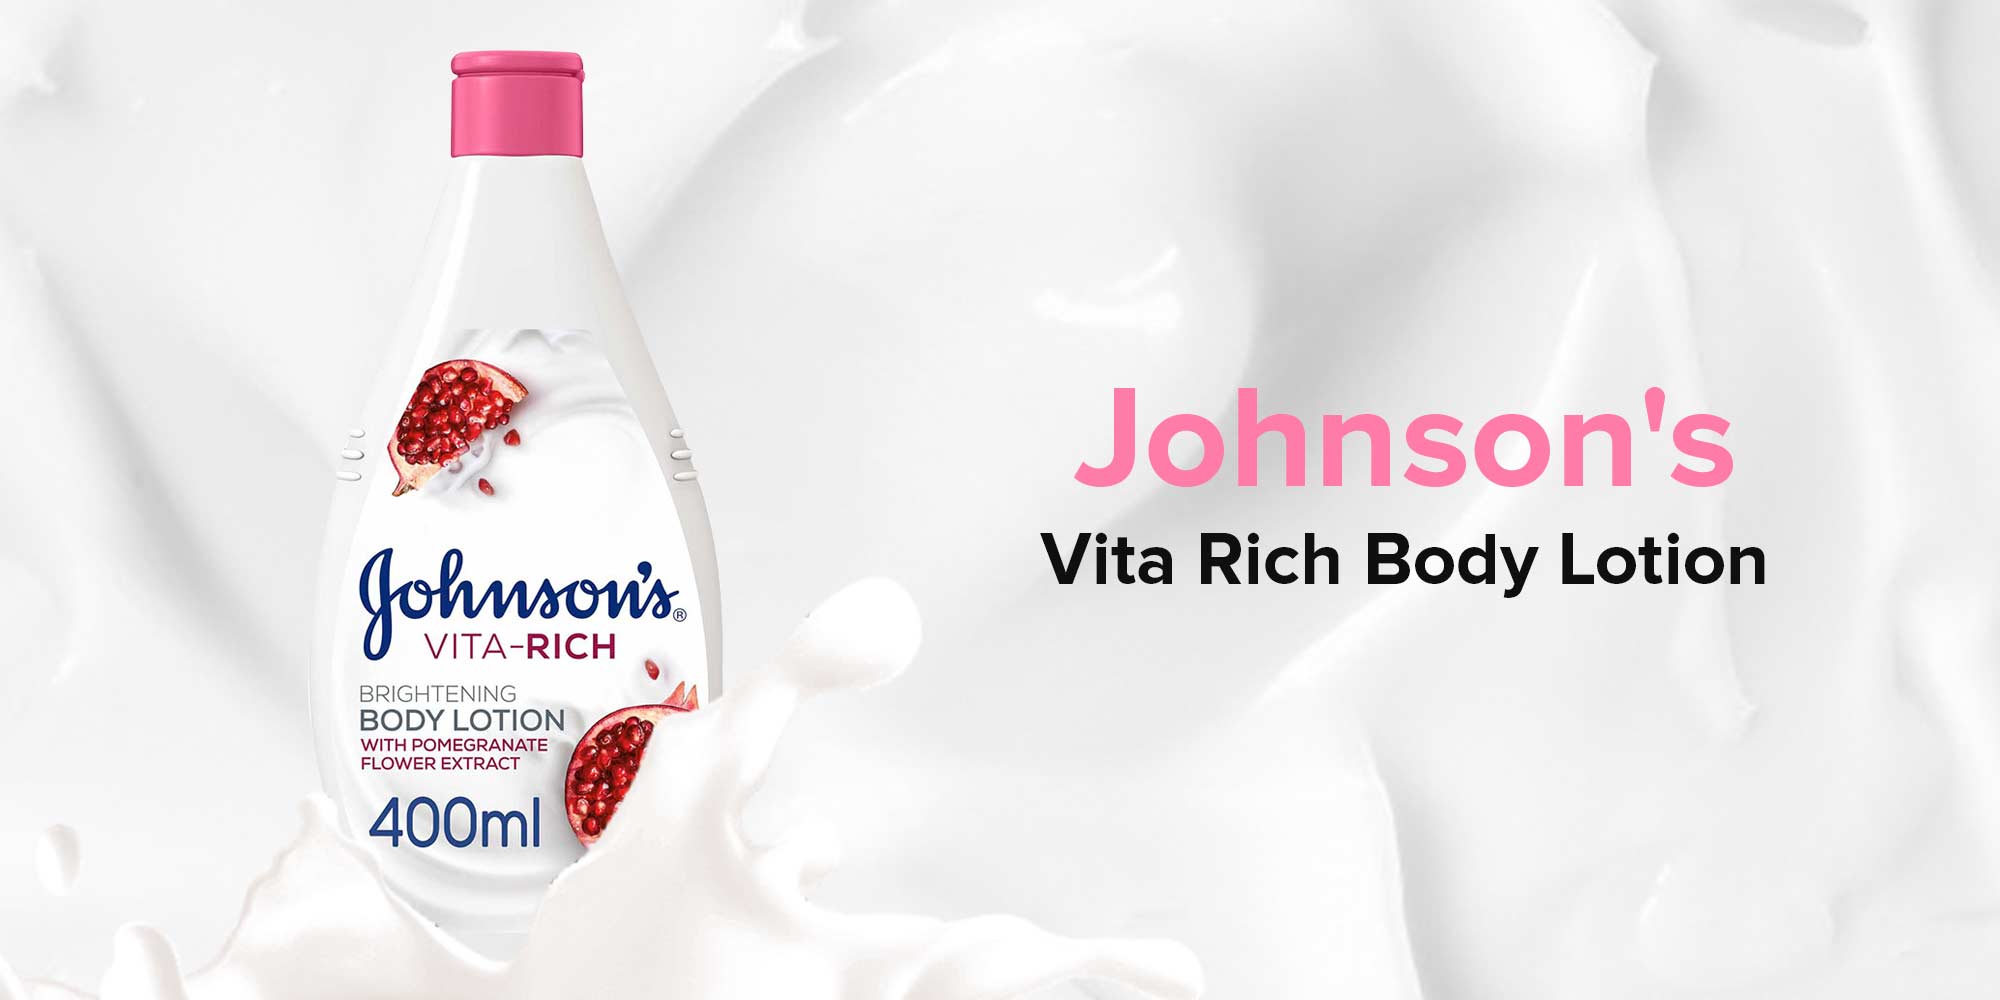 Johnson's Vita Rich Body Lotion 400ml KSA | Riyadh, Jeddah